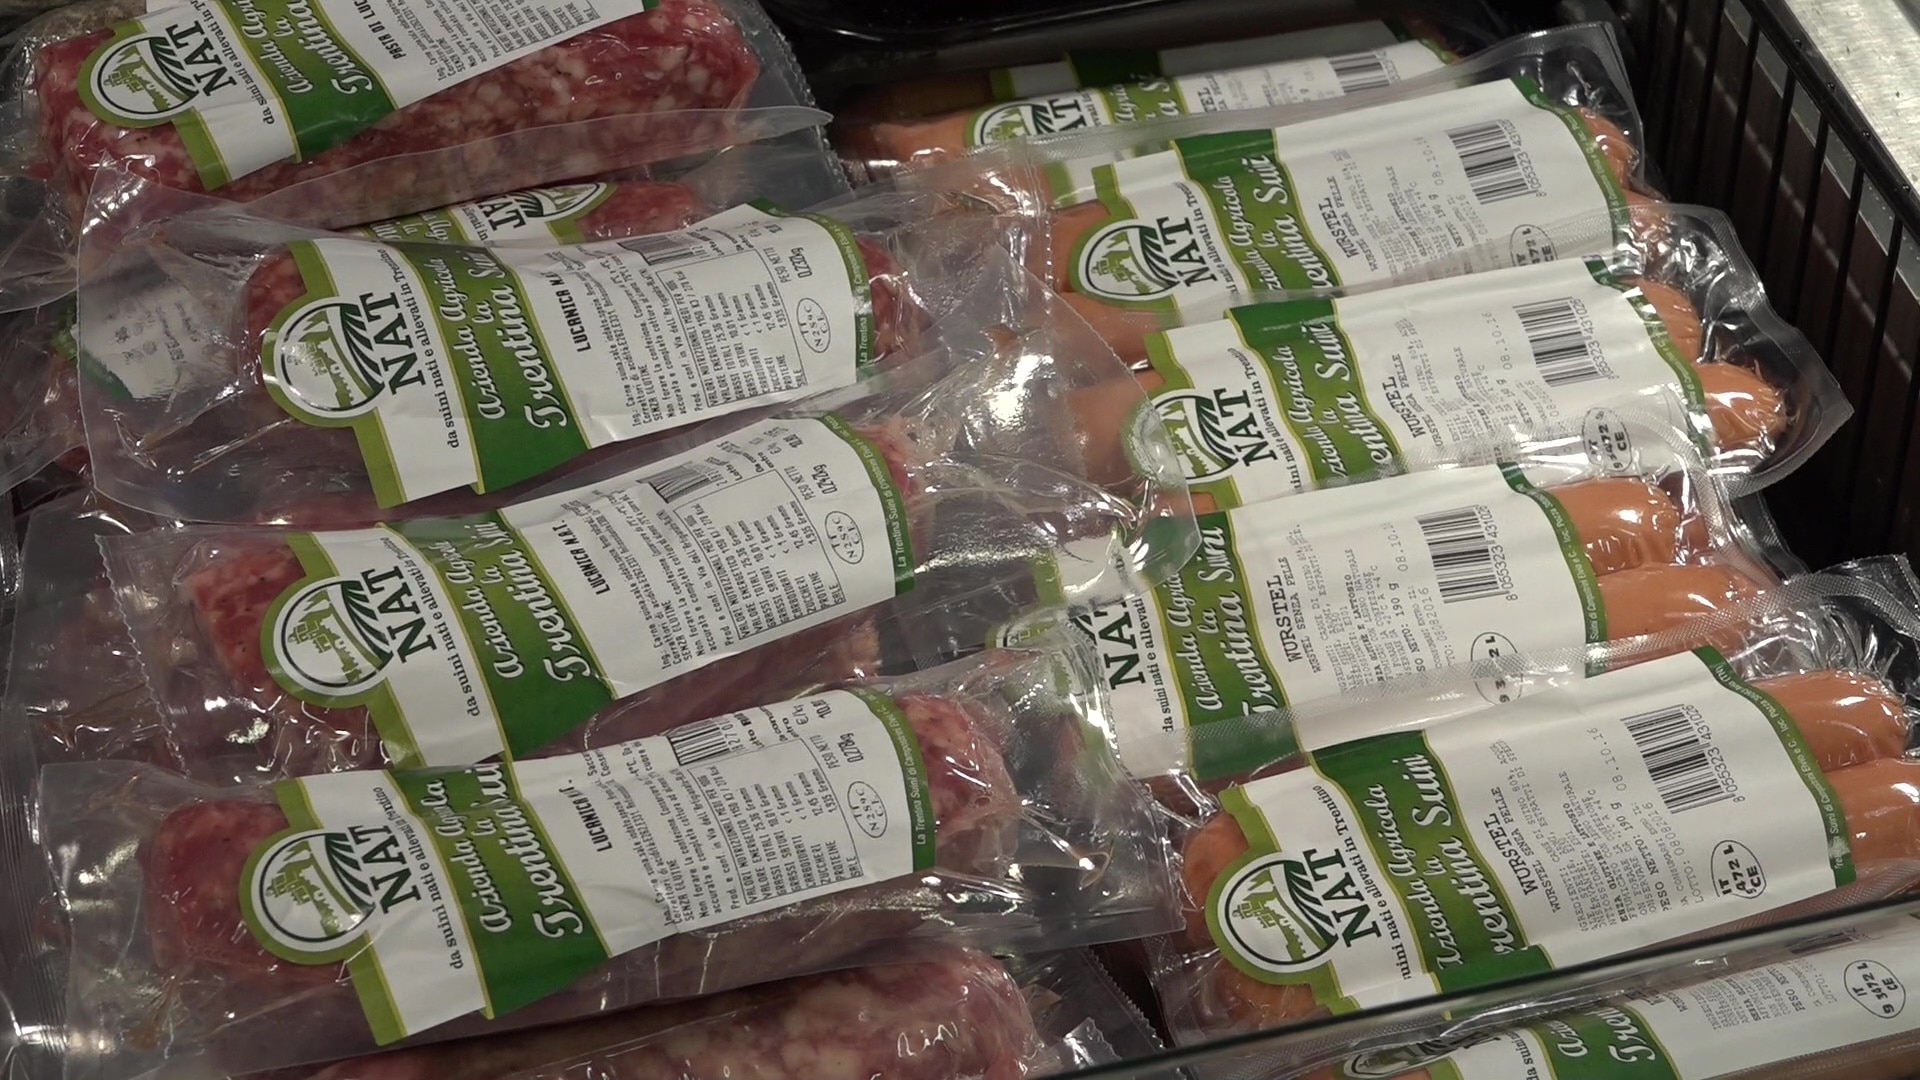 Prodotti lucanica wurstel carne di suino trentina supermercato